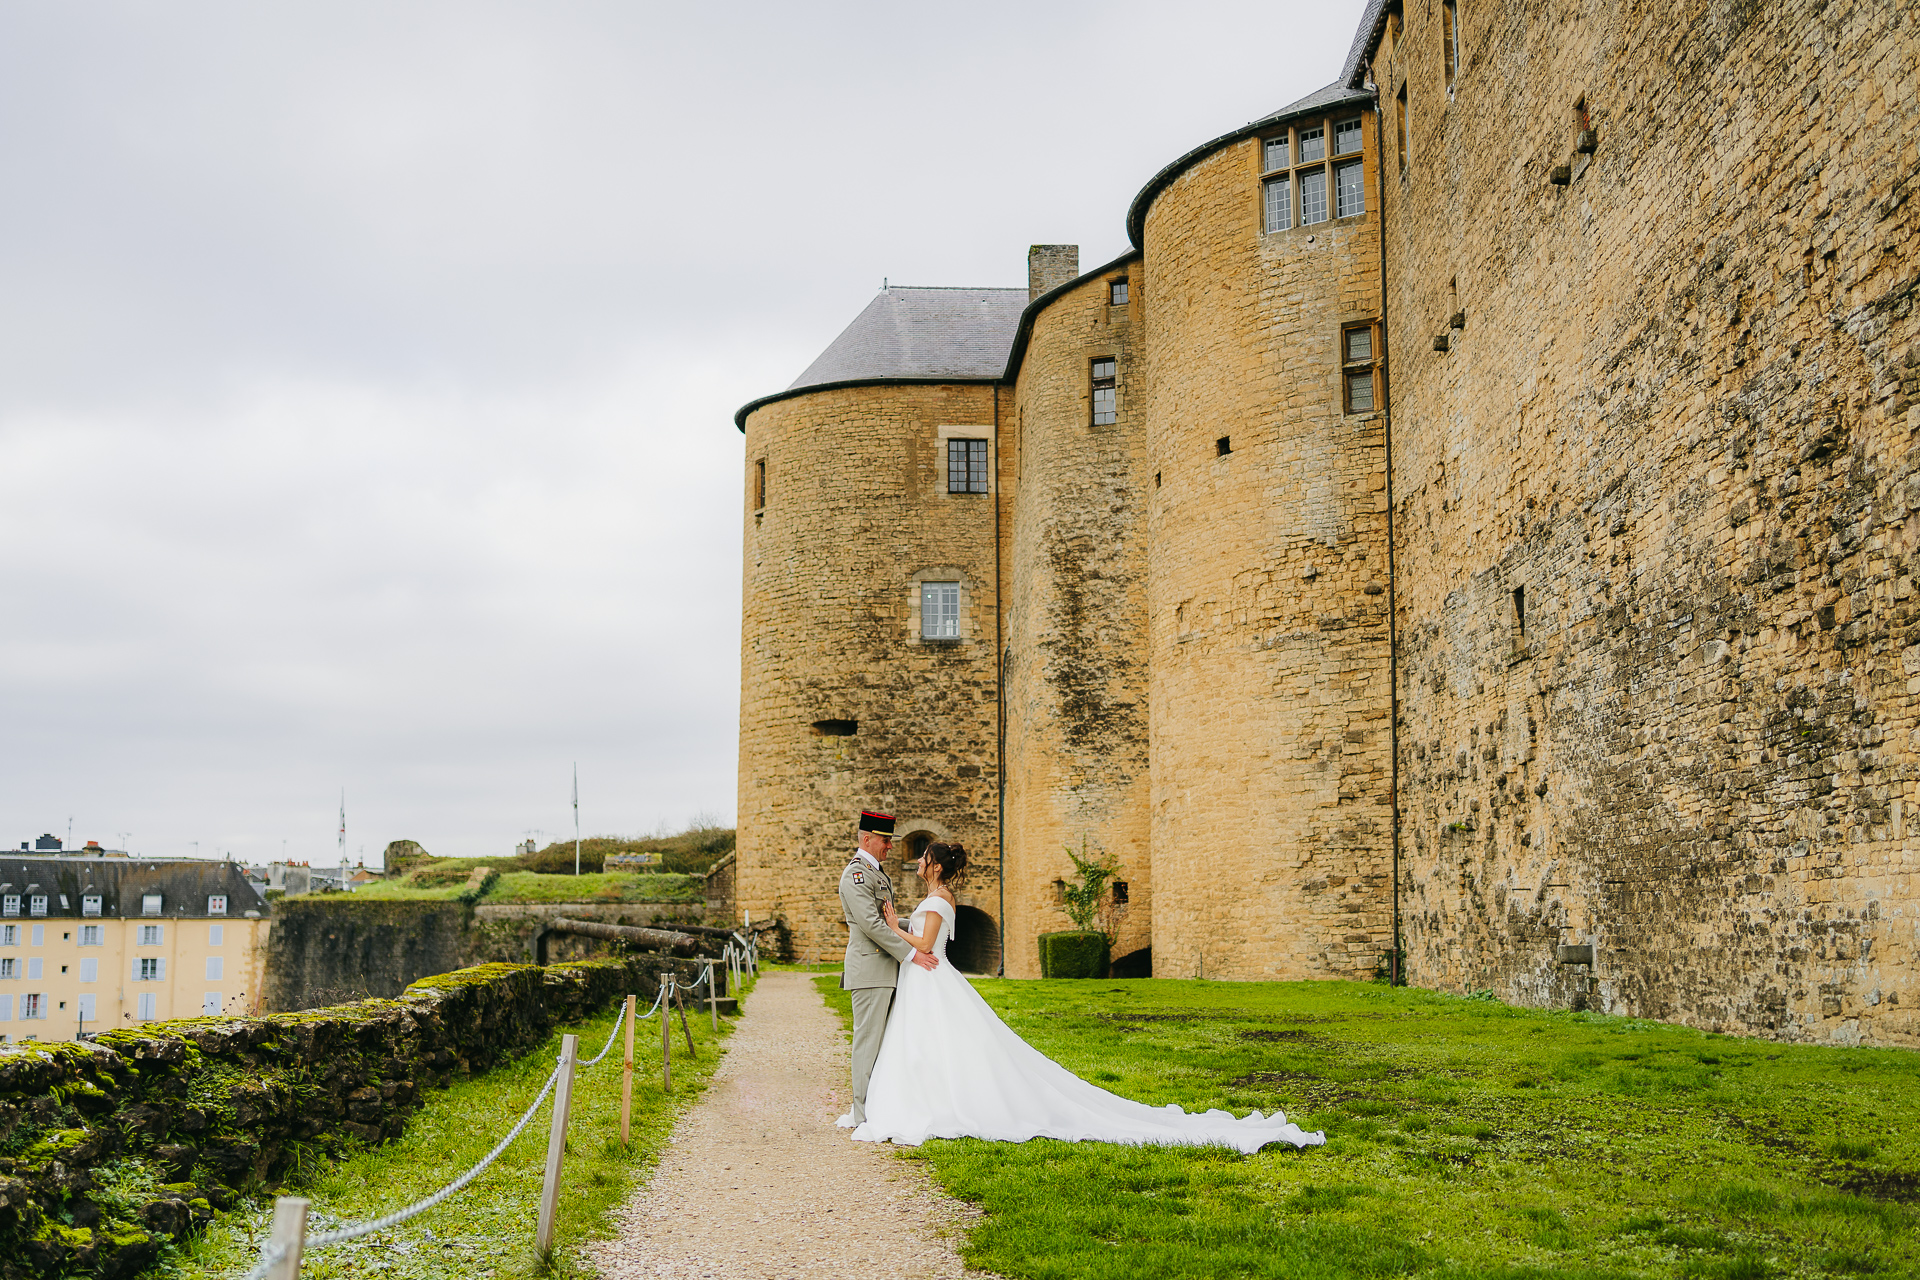 Un couple de jeunes mariés s'embrassant devant un grand château historique en pierre.